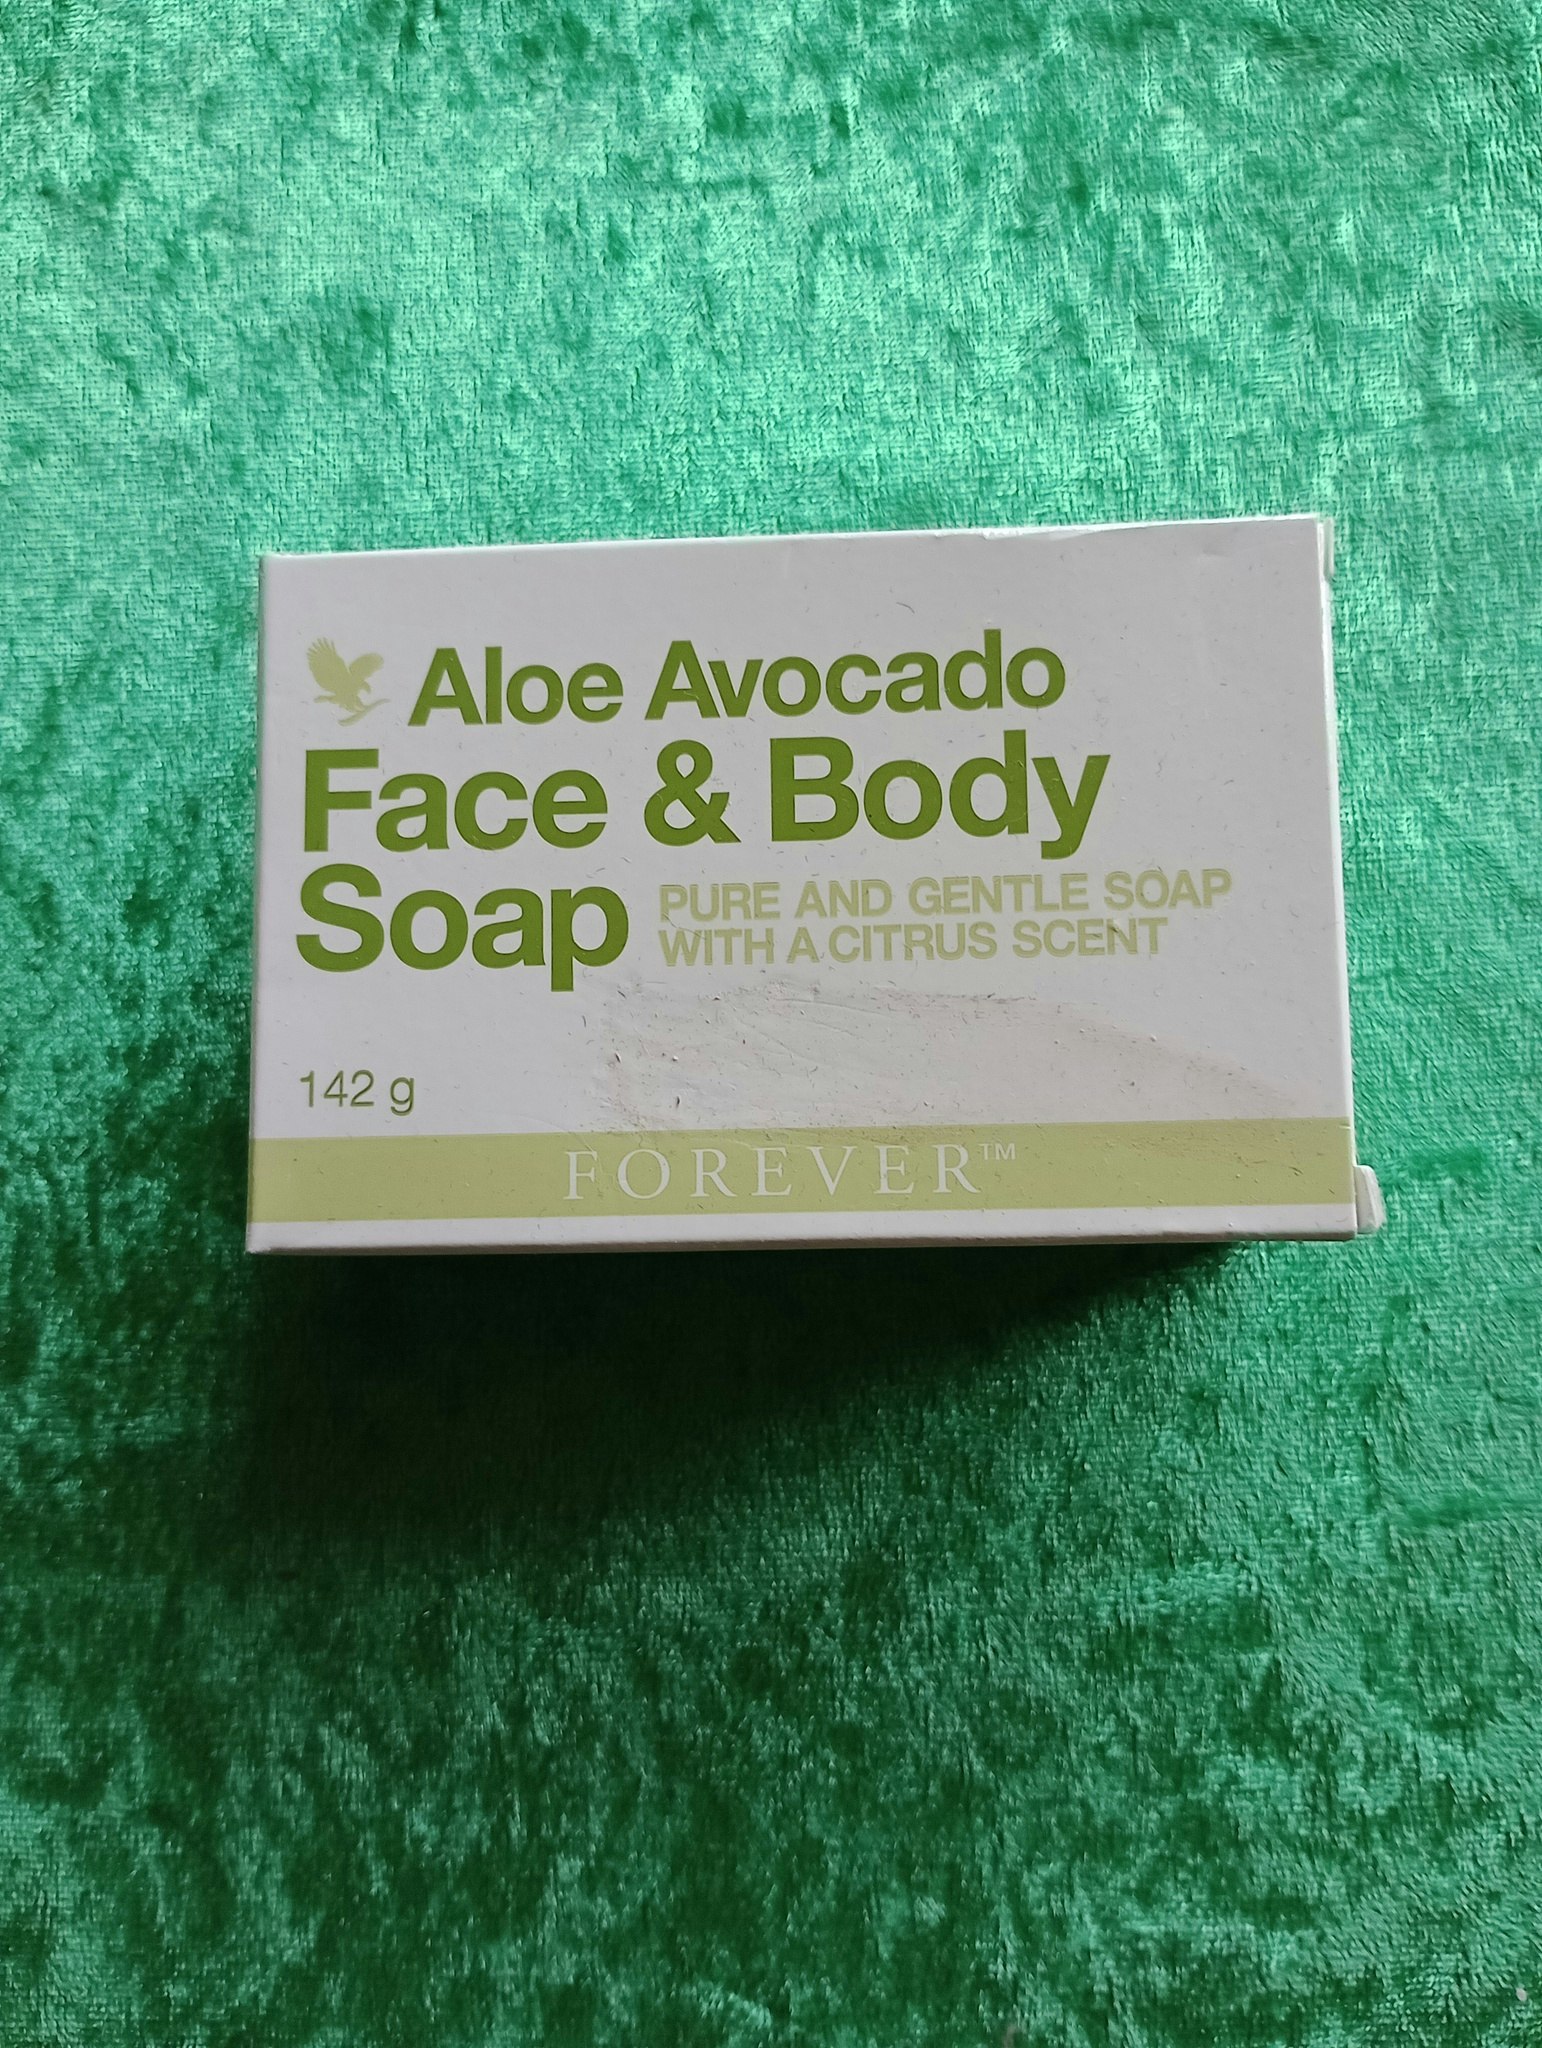 Aloe Avocado Face & Body Soap 142g